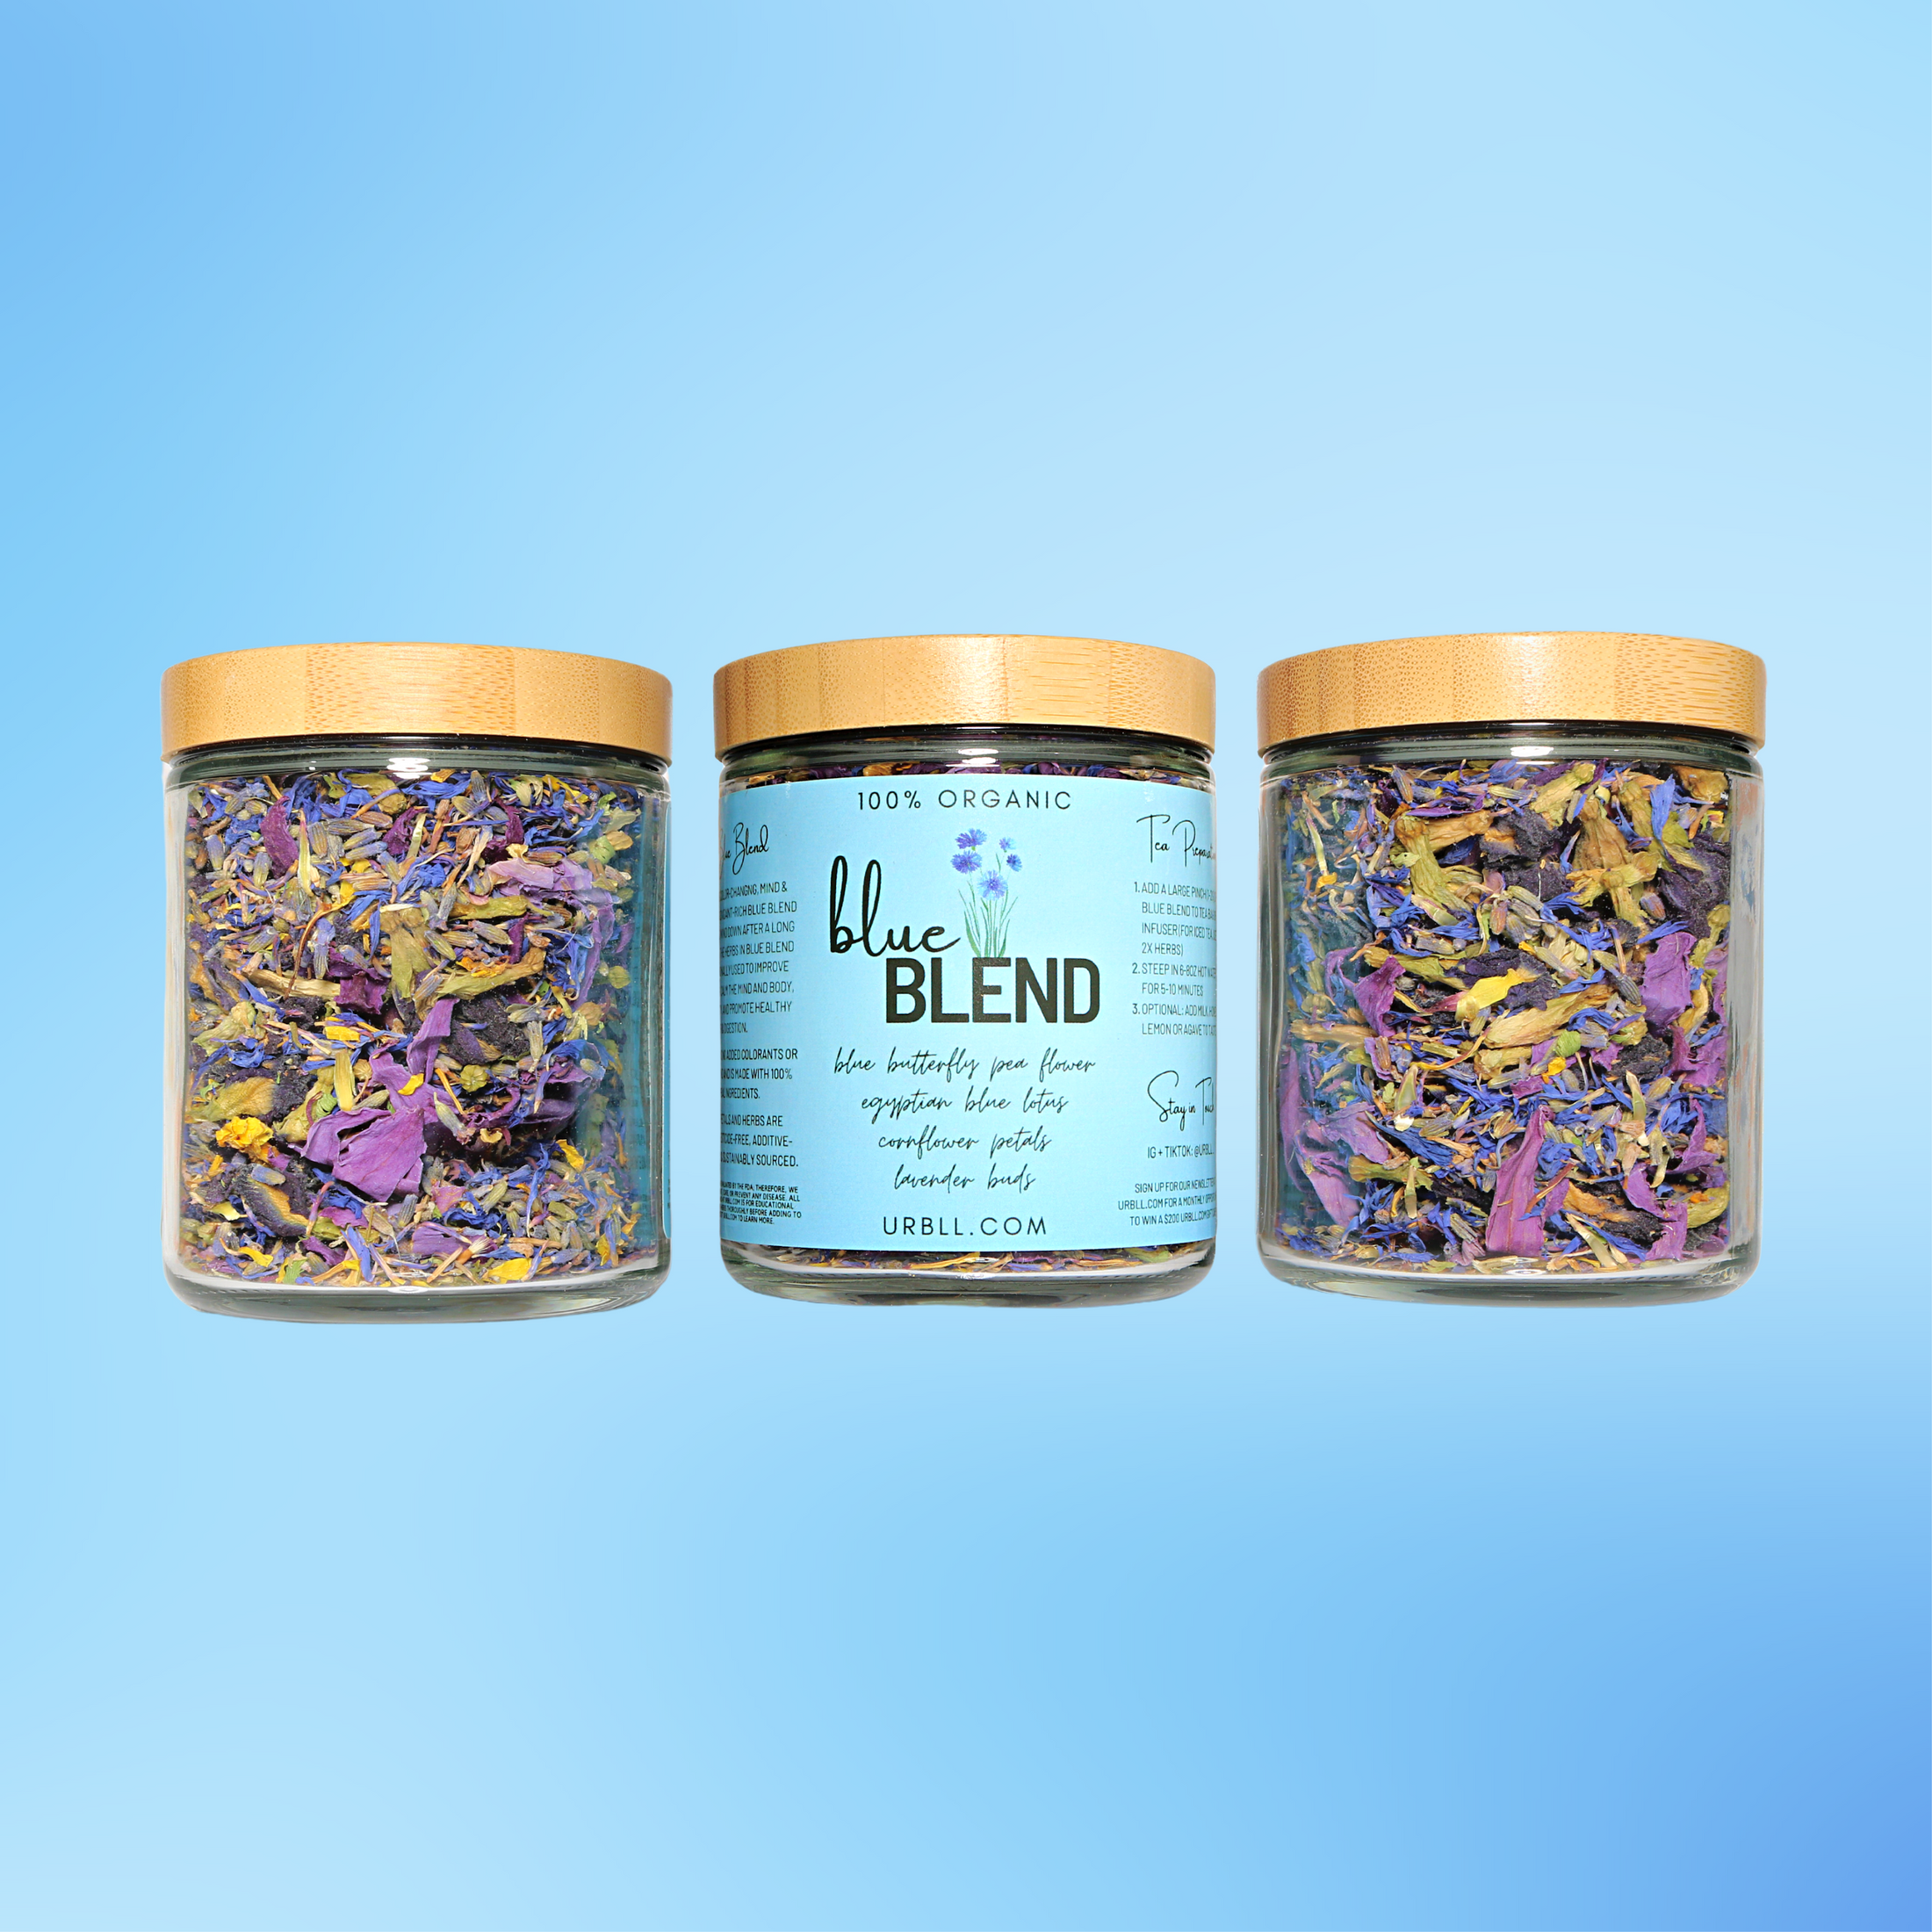 Blue Blend • Organic Blue Tea